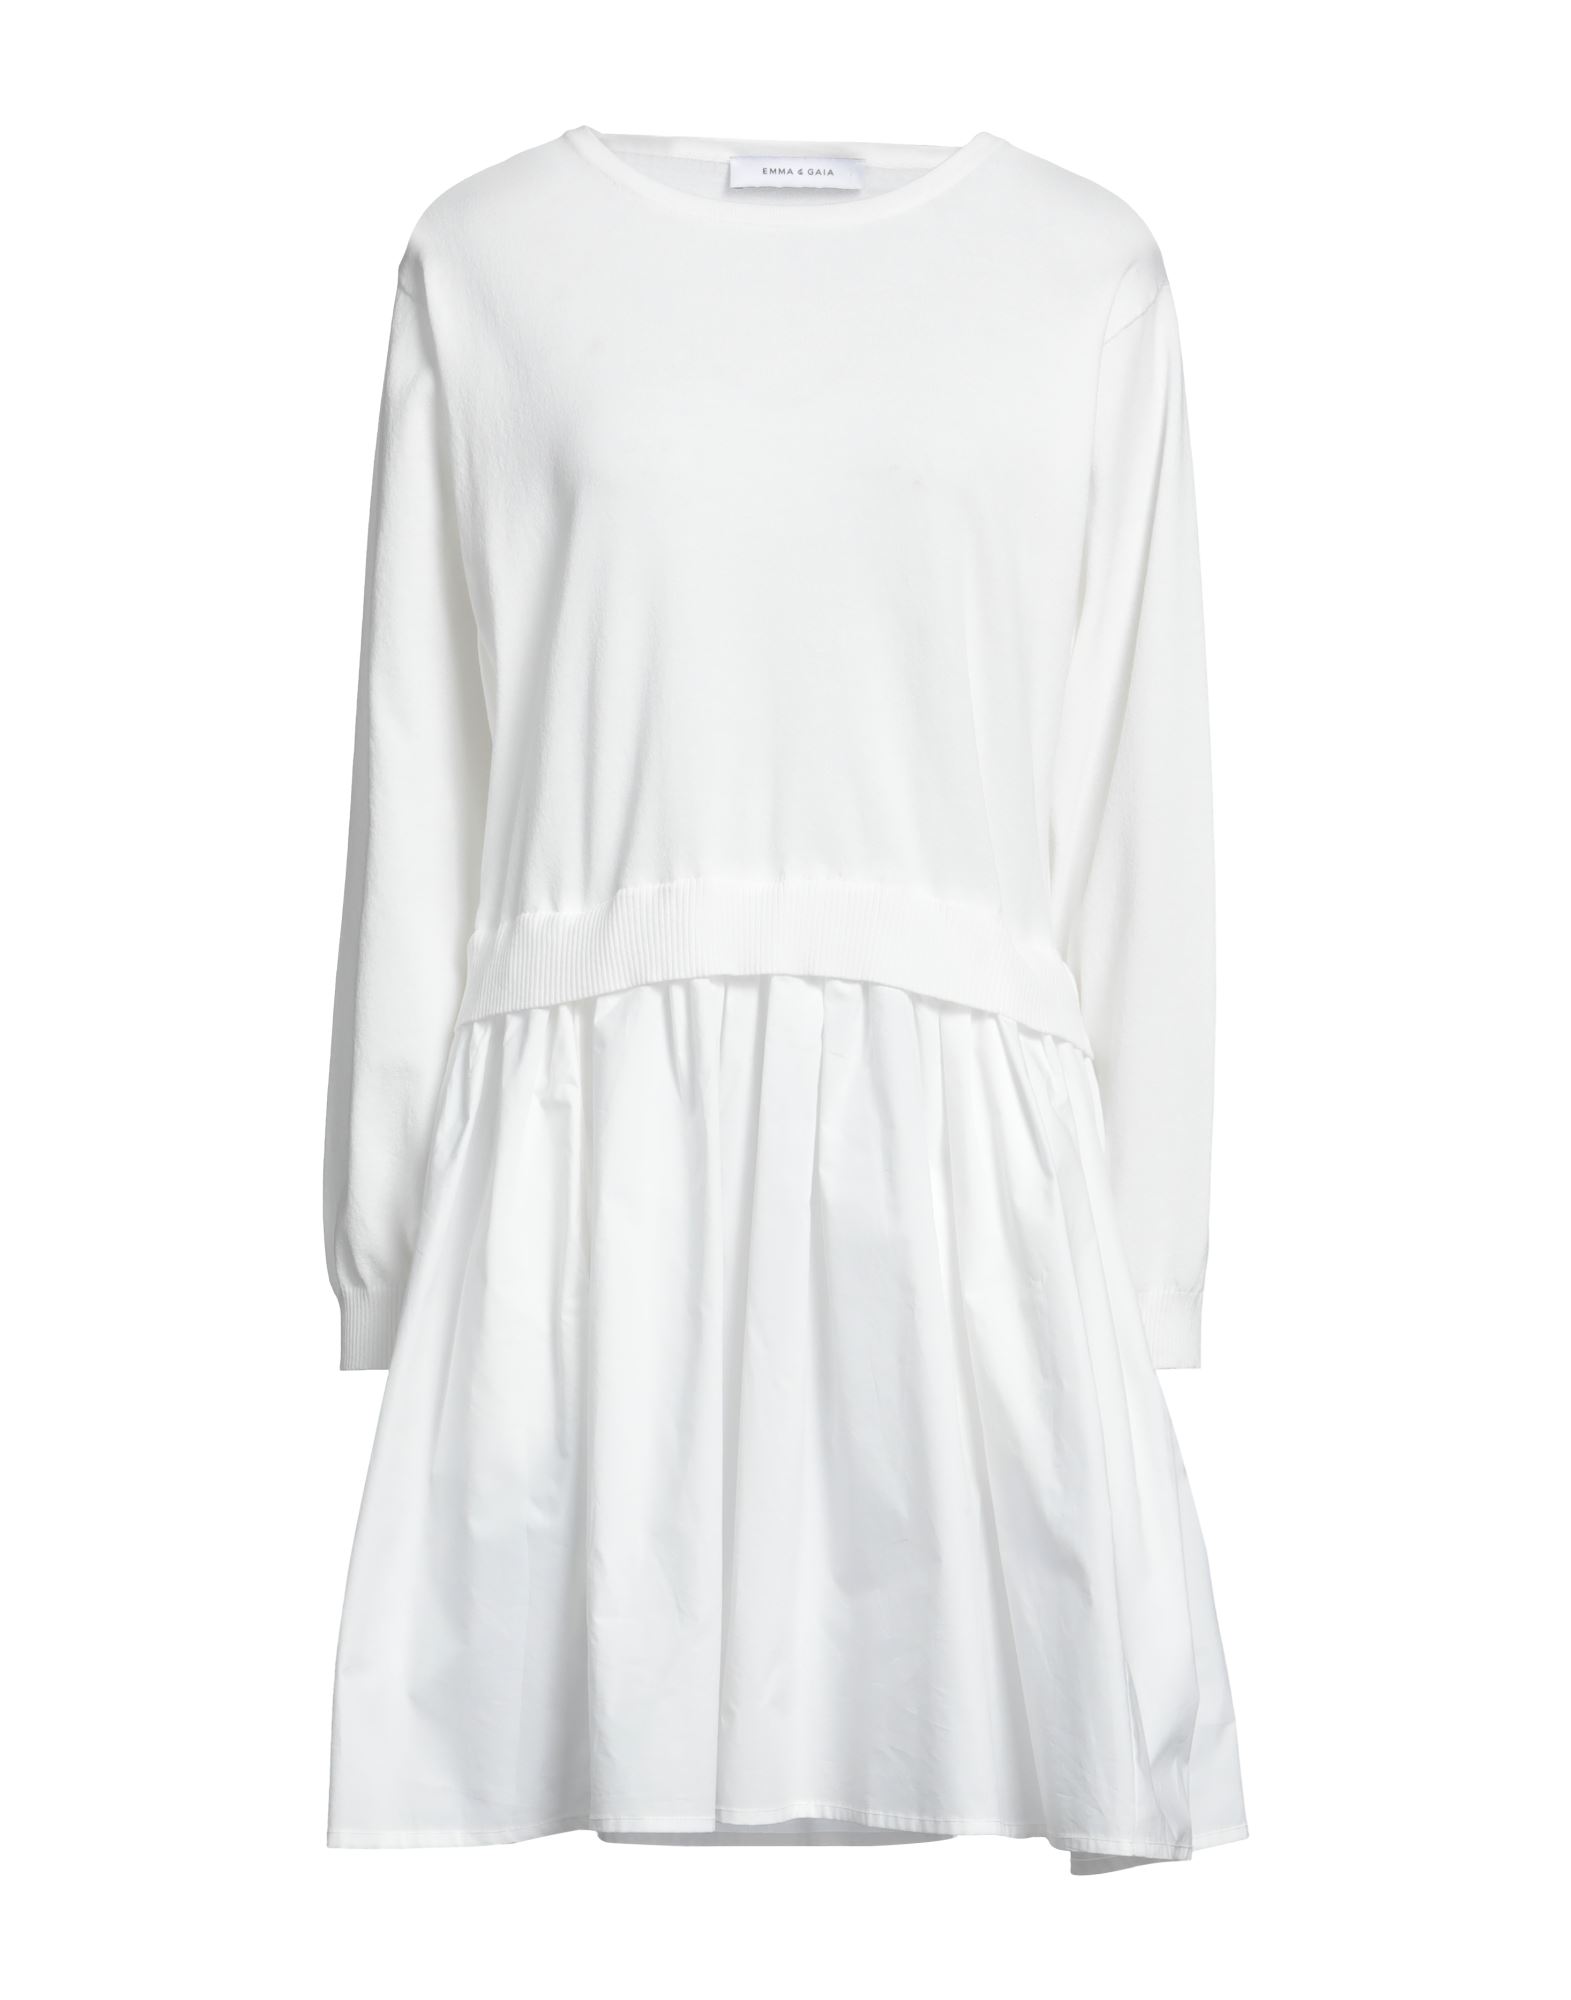 Emma & Gaia Woman Mini Dress White Size 10 Cotton, Polyester